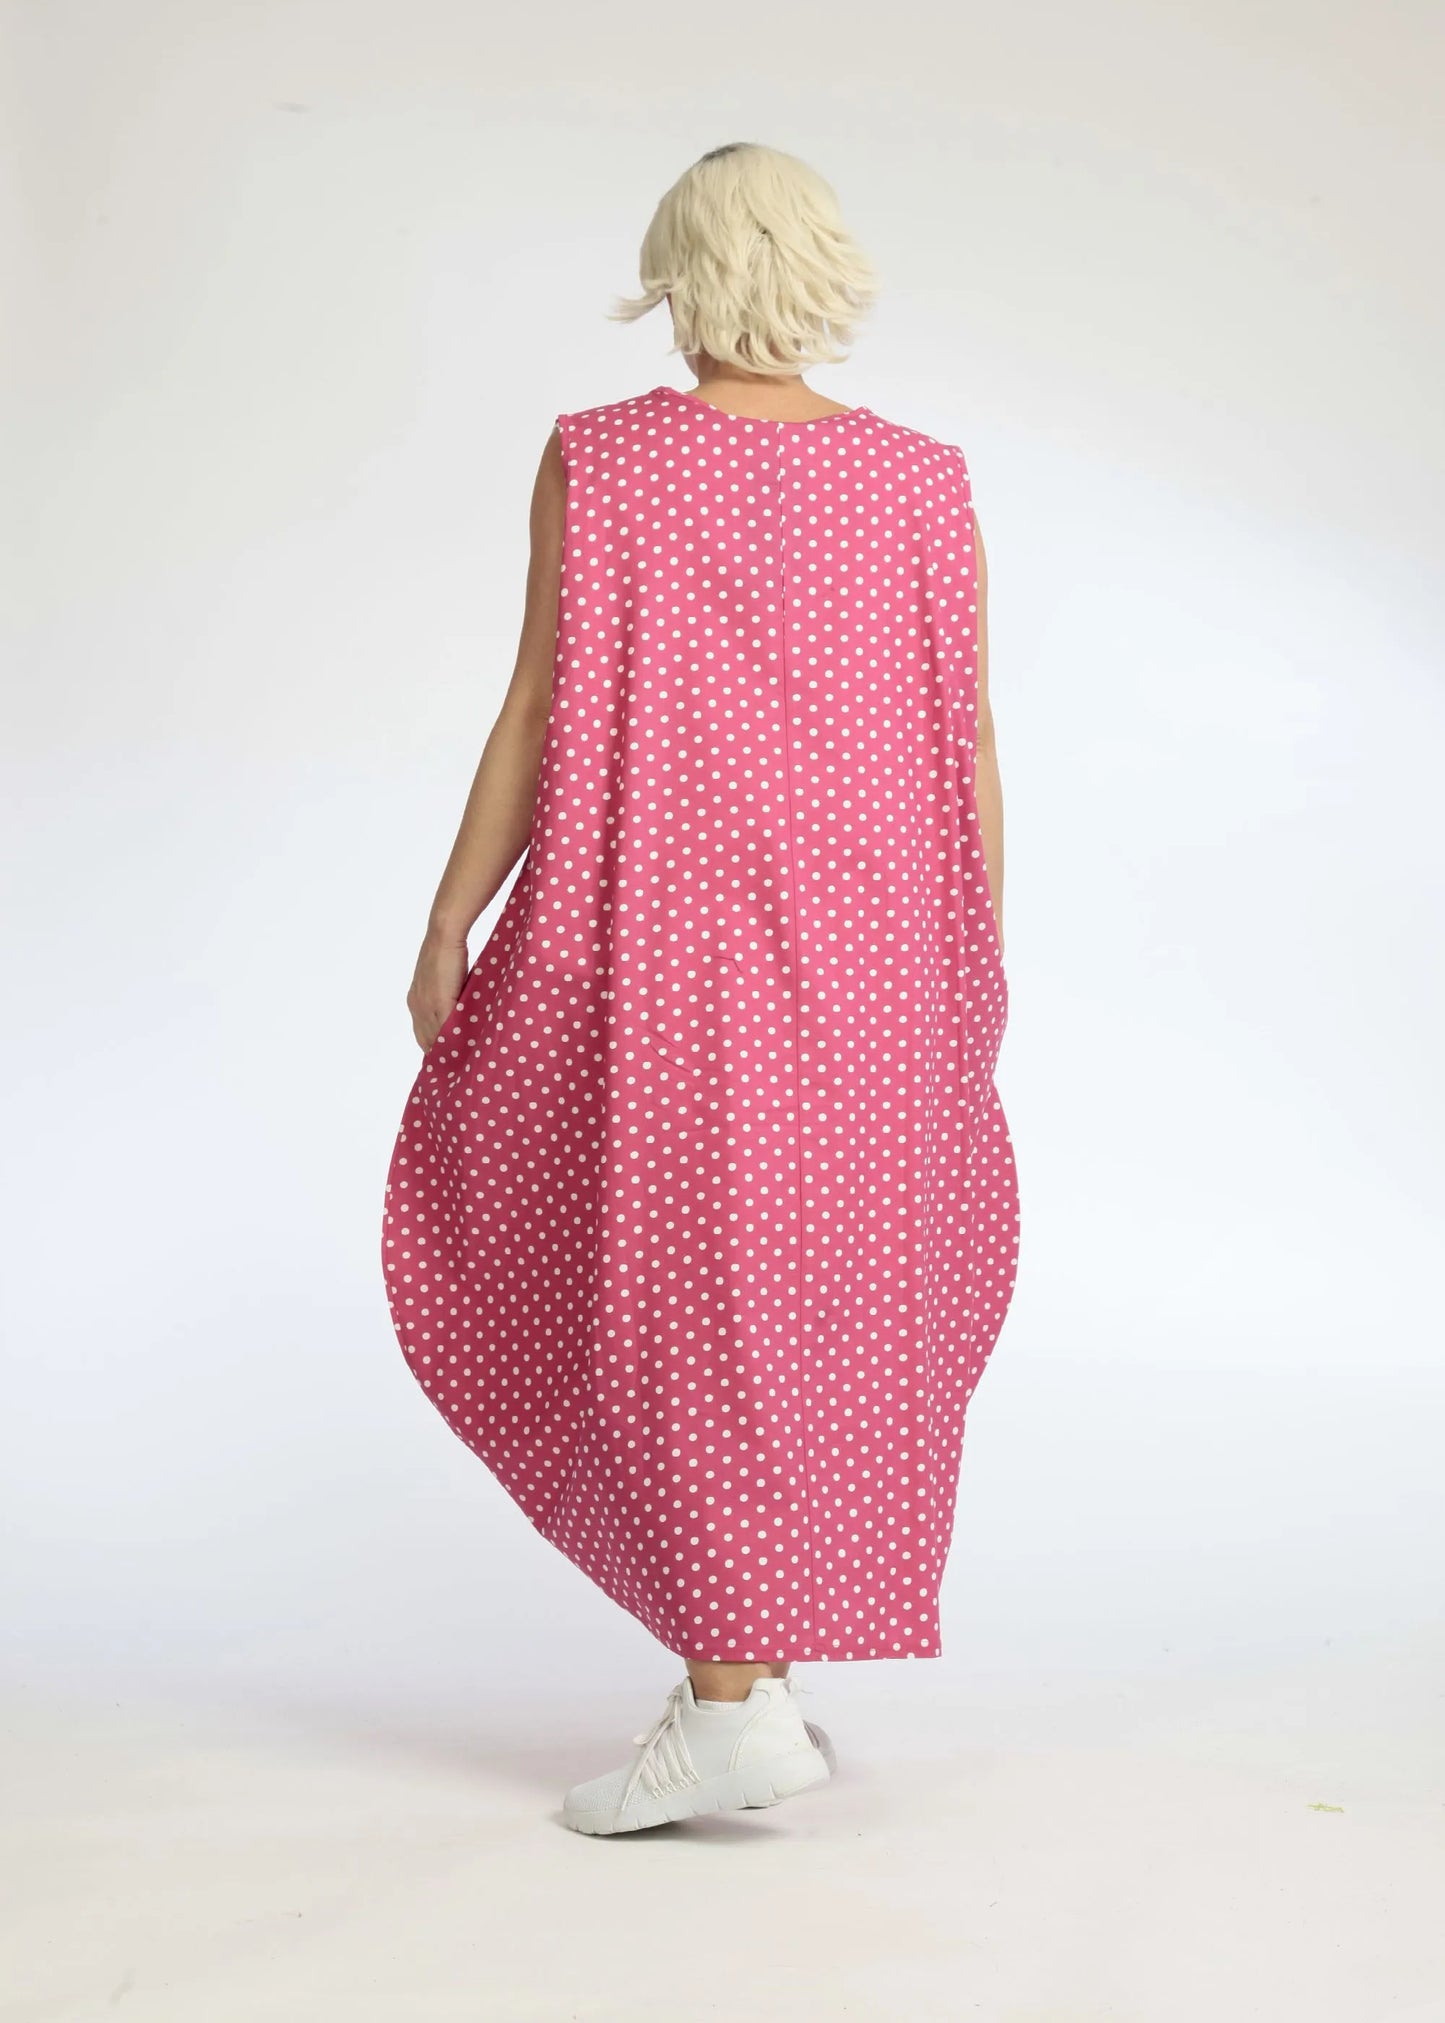 Sommer Kleid in Ballon Form aus glatter Popeline Qualität, Freya in Pink-Weiß